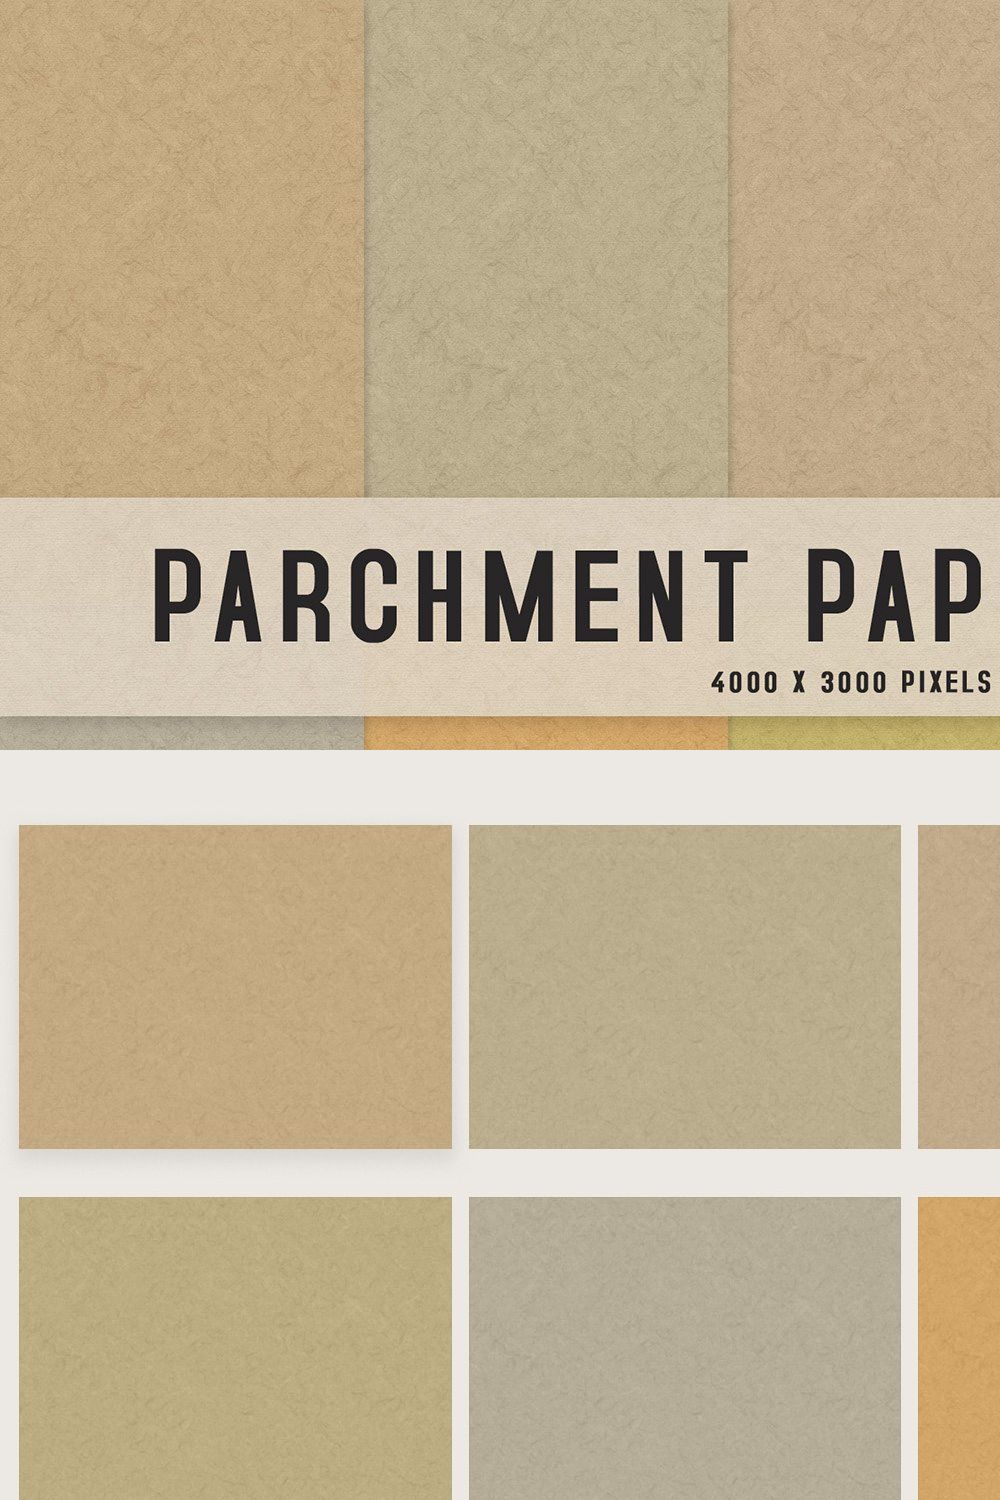 Parchment Paper Textures pinterest preview image.